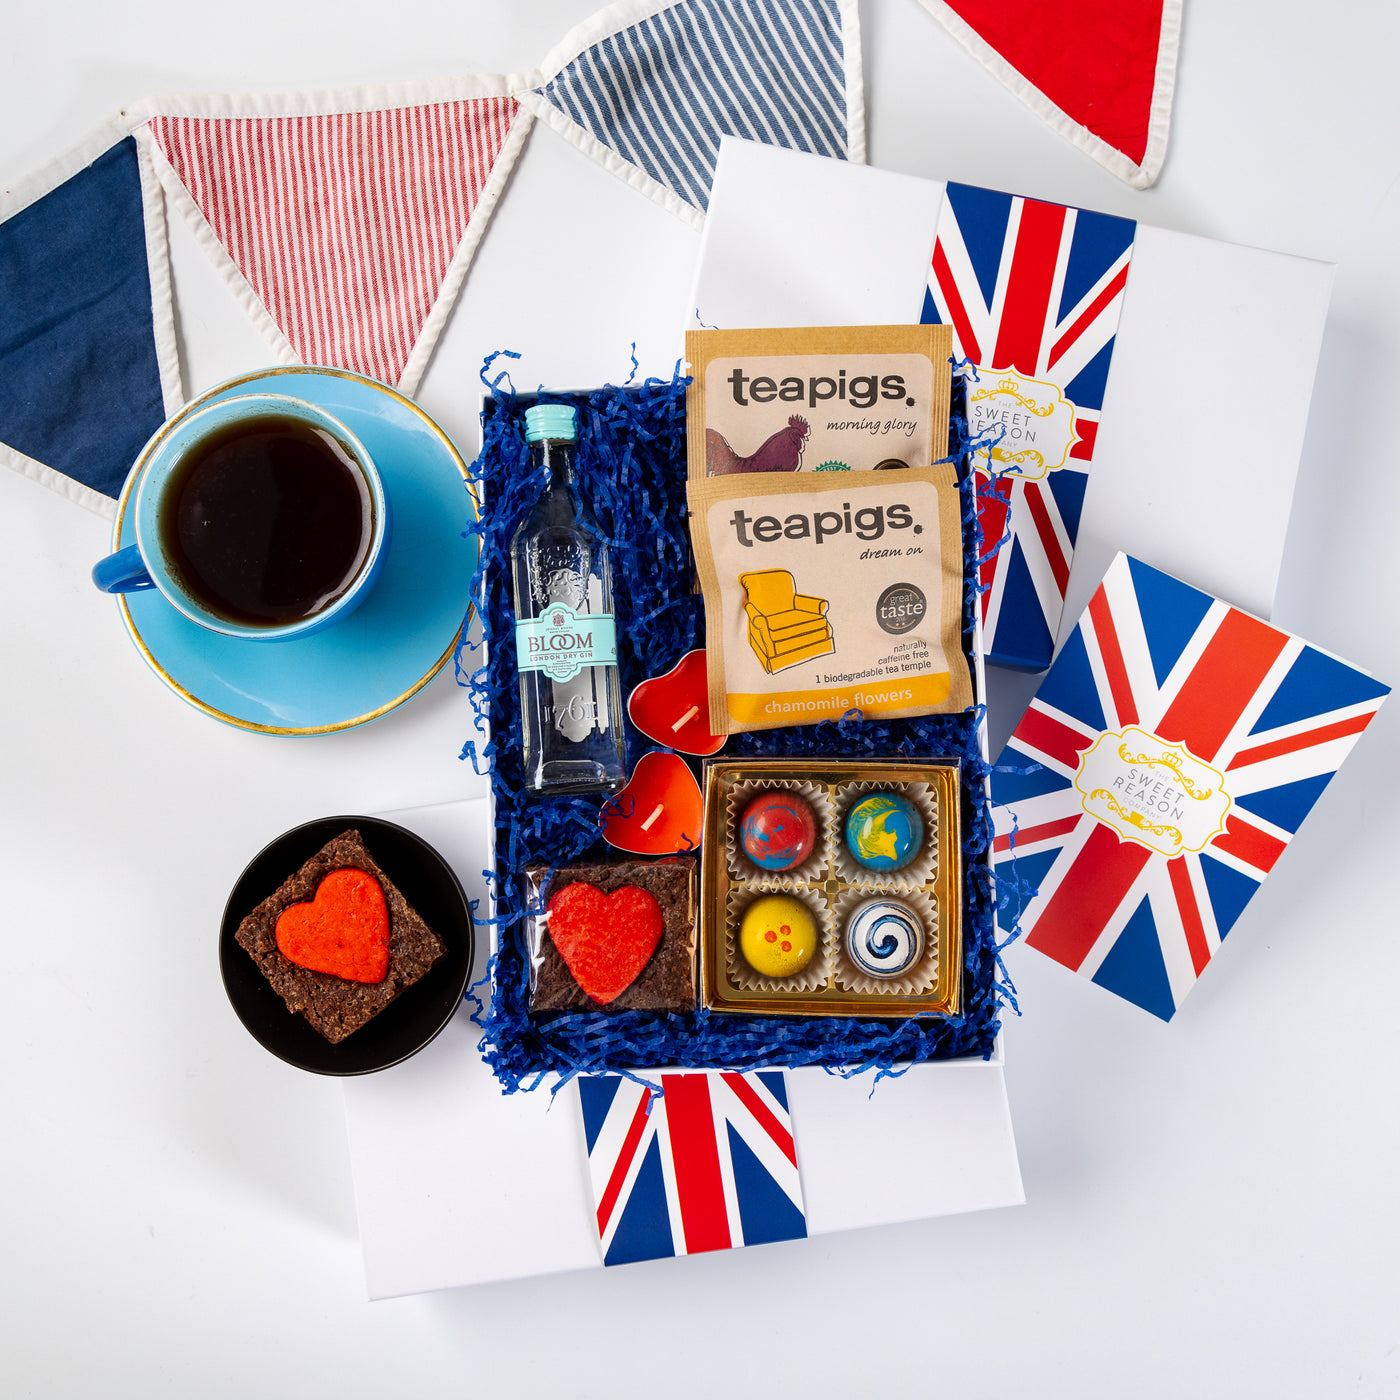 'British' Treats, Tea and Gin